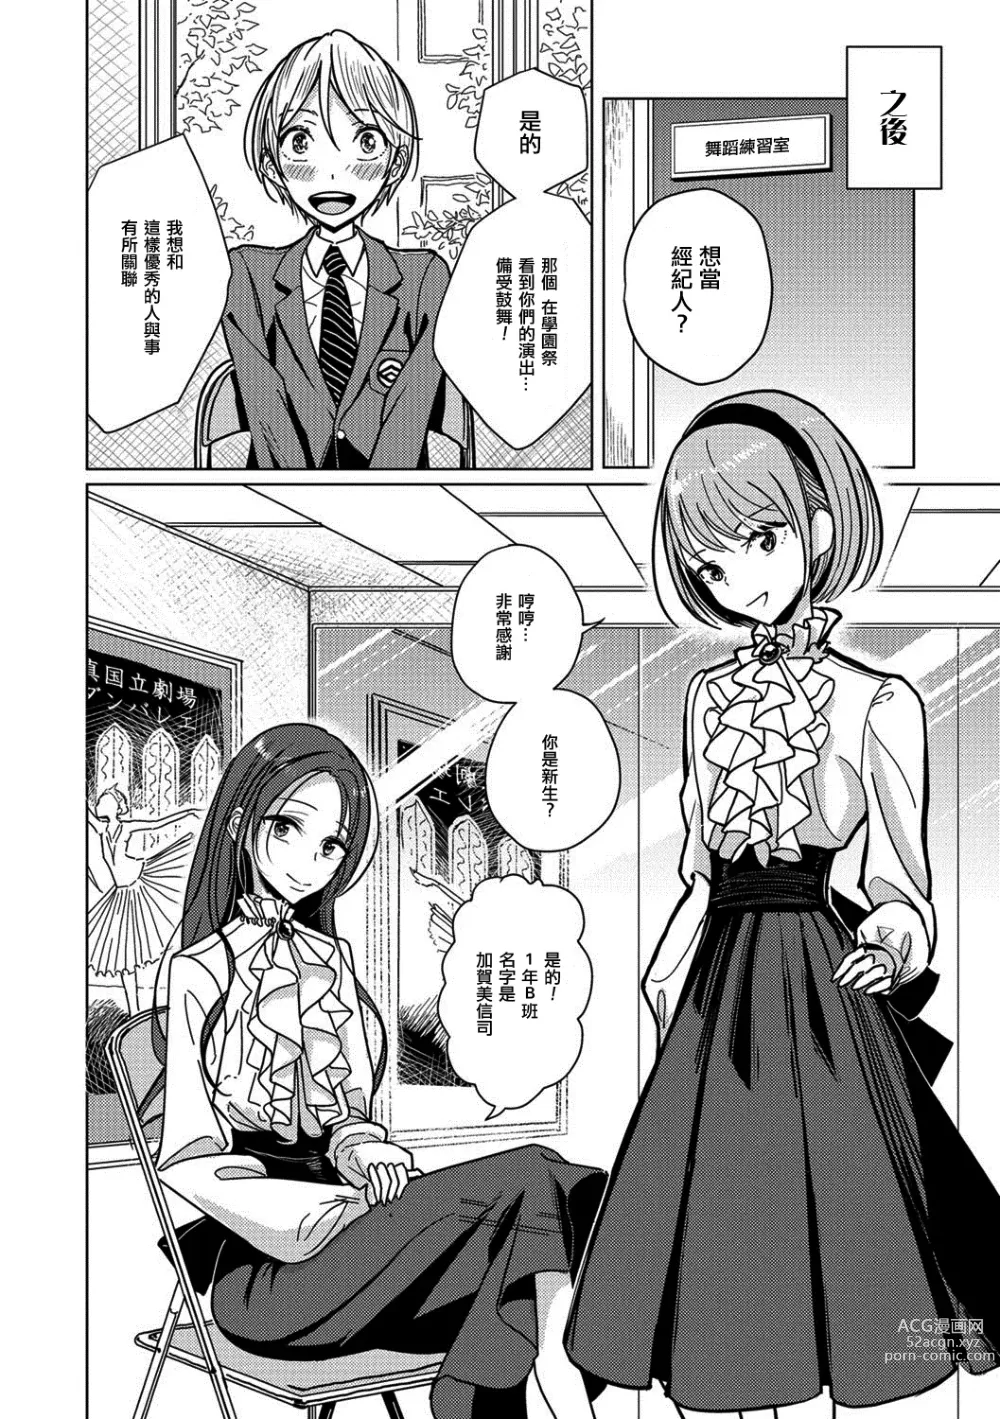 Page 7 of manga Bokura wa...